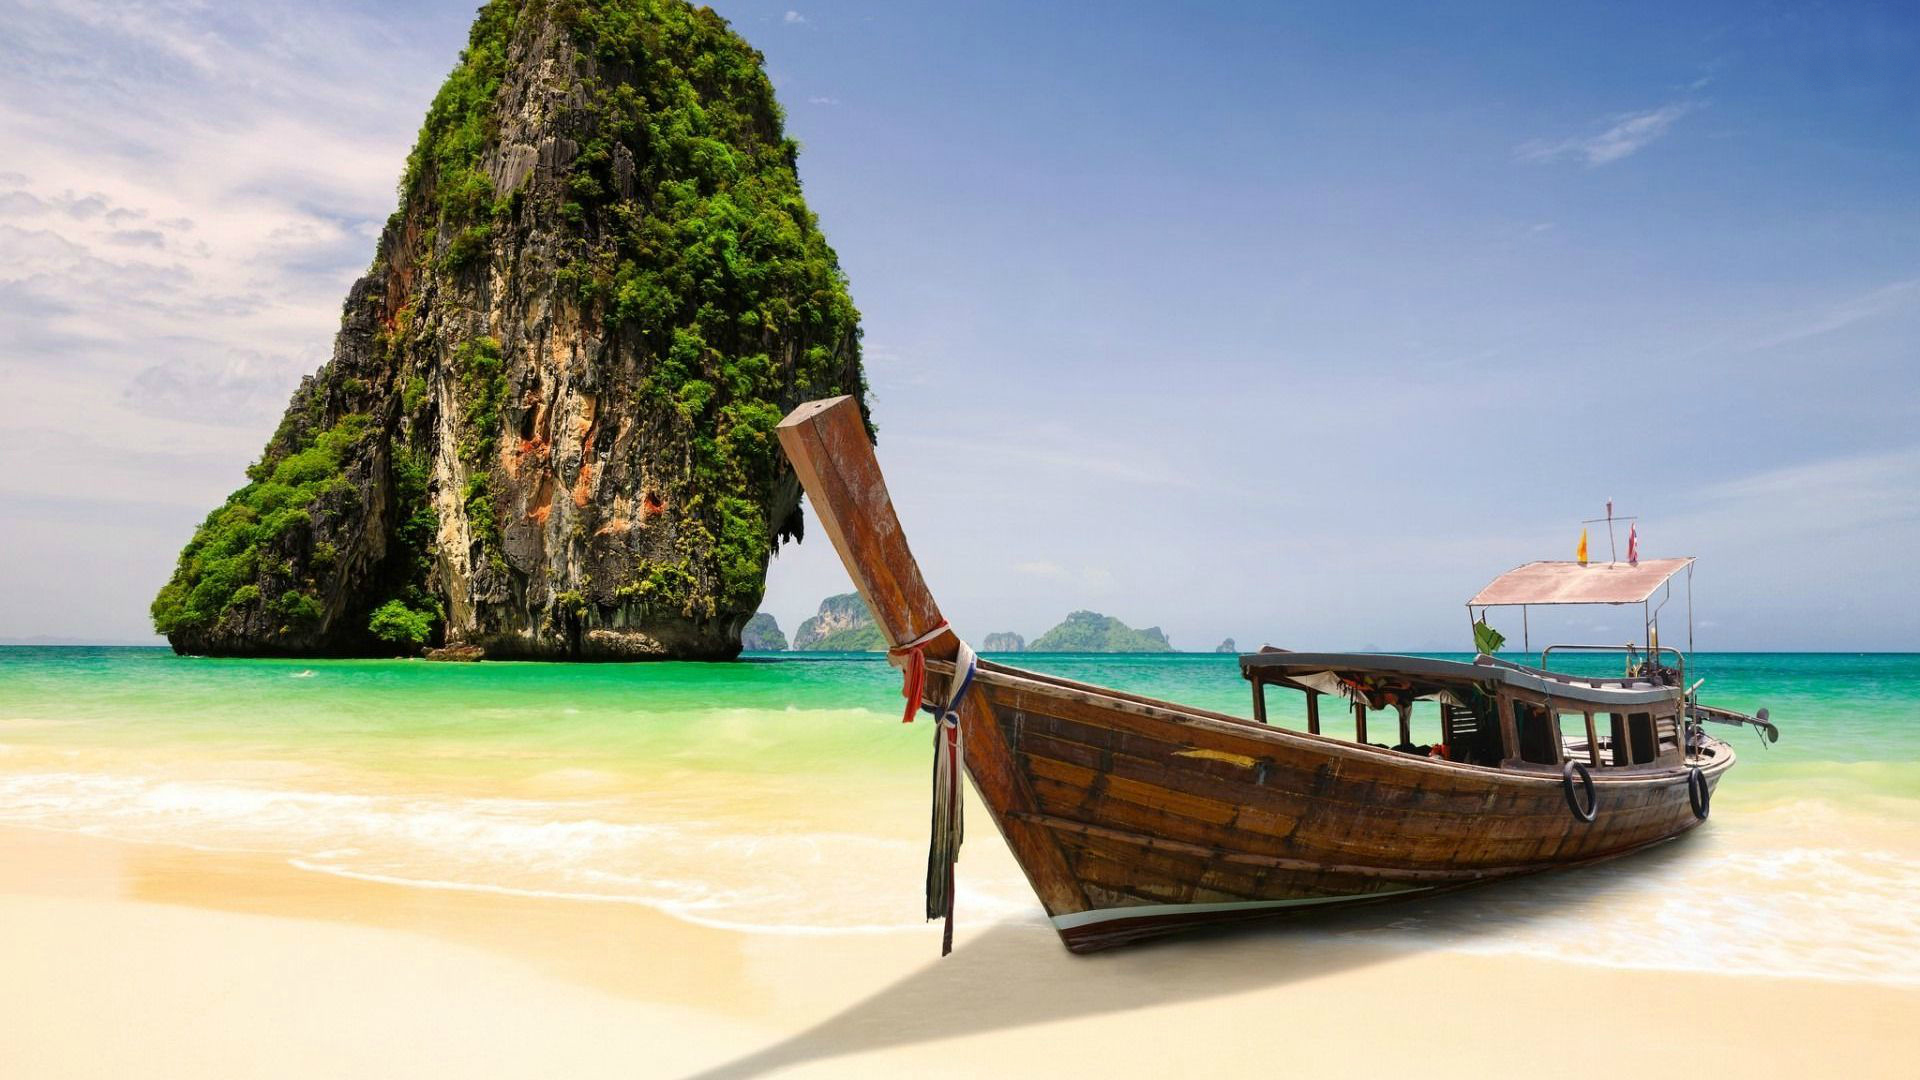 632800 descargar imagen vehículos, barco, playa, krabi, tailandia: fondos de pantalla y protectores de pantalla gratis